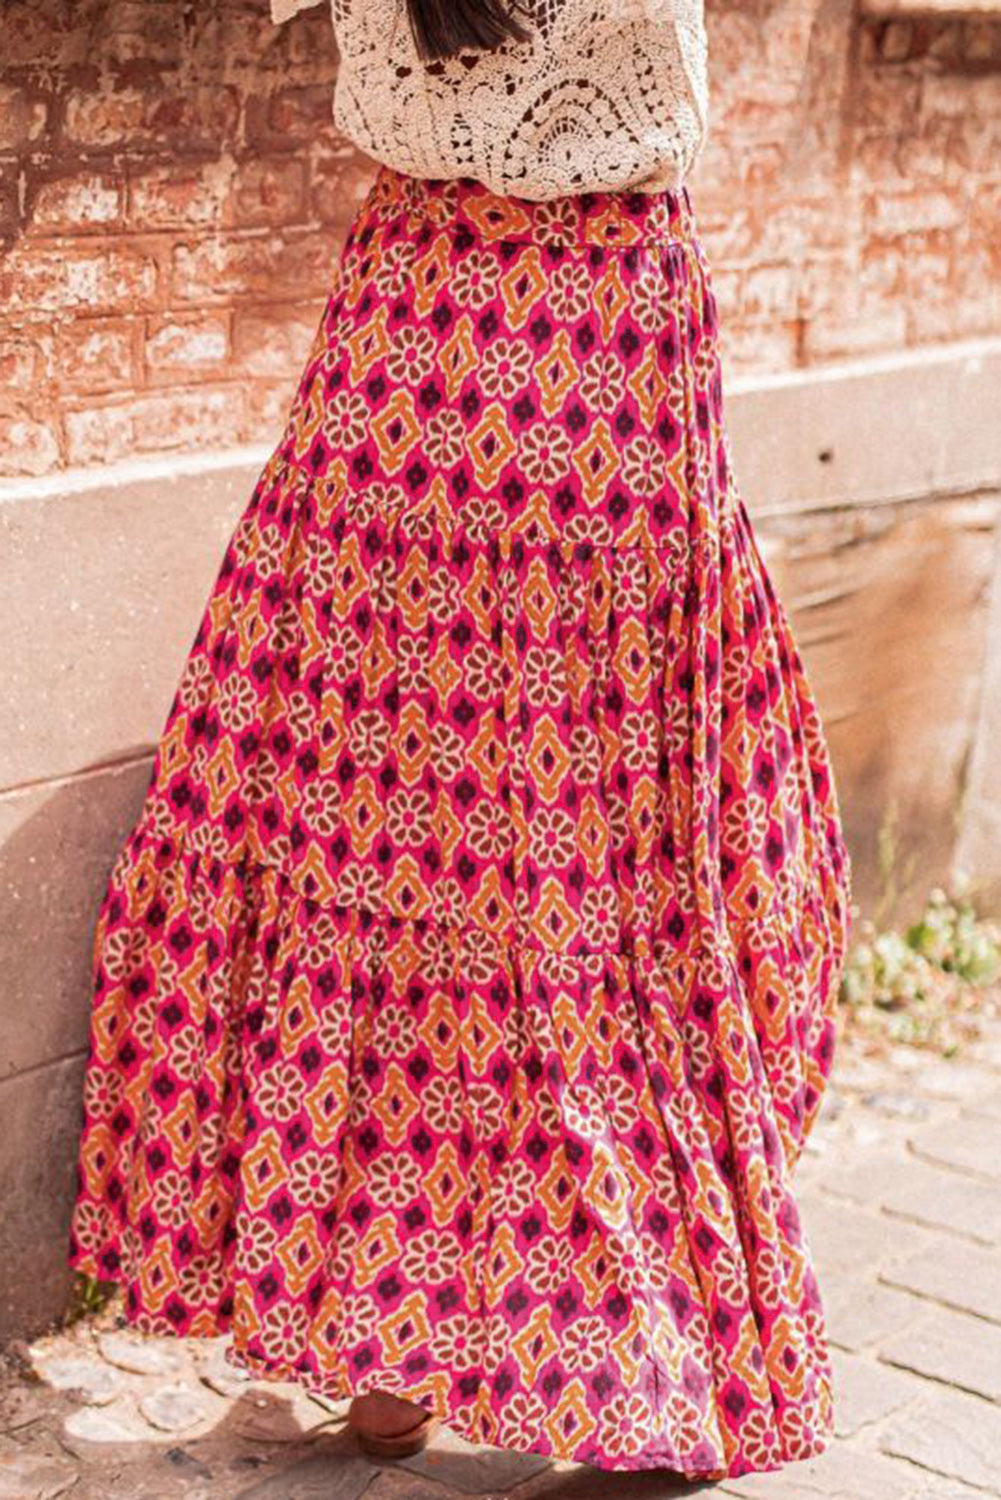 Herrnalise Womens High Waist Polka Dot Pleated Skirt Women Sexy Tube  Strapless Strapless Printing Sleeveless Tight Skirt Dress Dress 